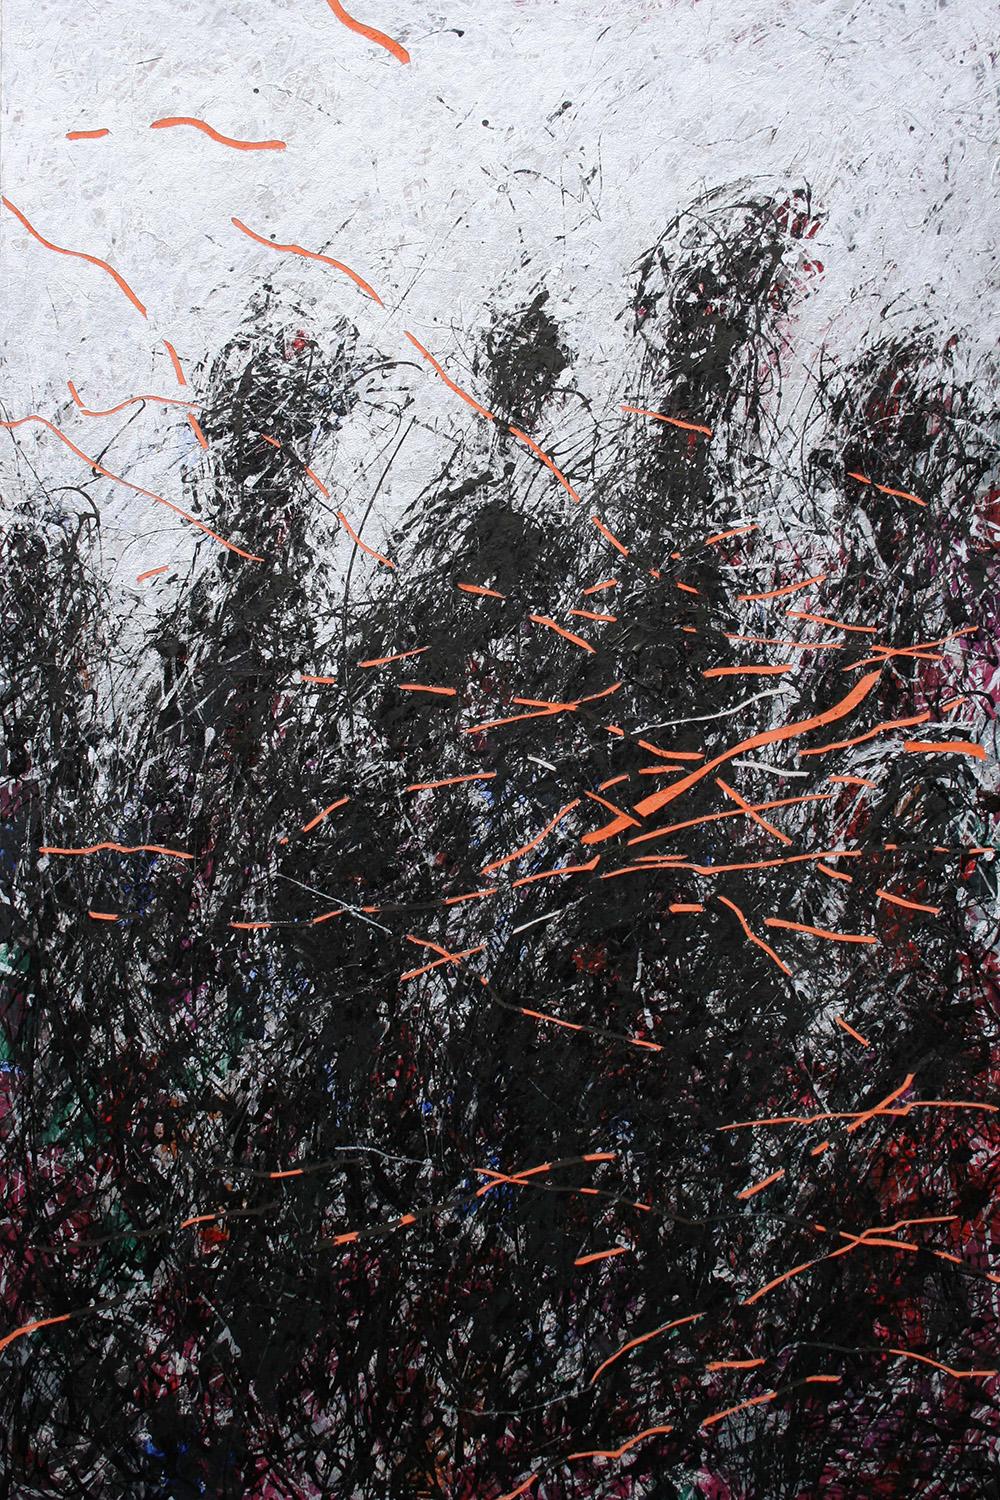 Zhang Hongyu Abstract Painting – A Second 4 von Hongyu Zhang - Semi-abstrakte zeitgenössische Malerei, schwarz, orange